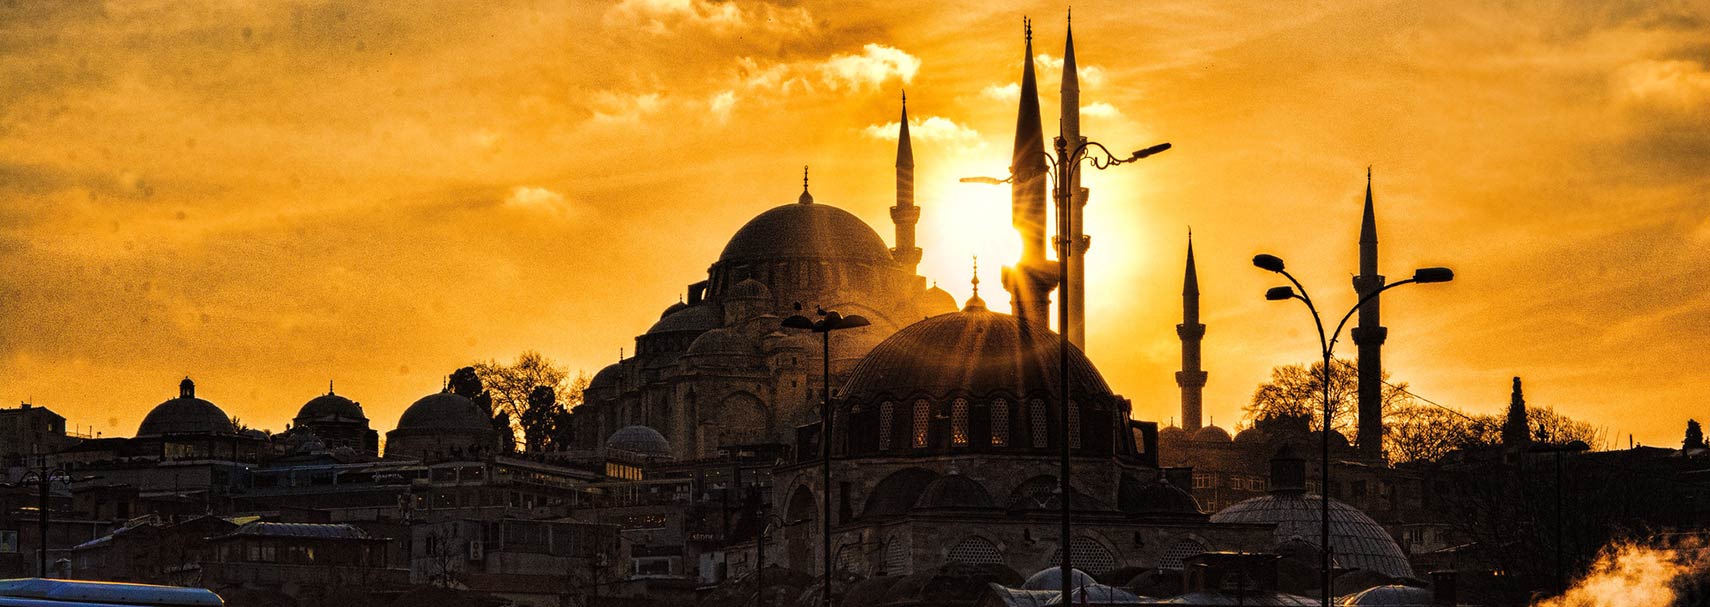 Sunset behind Süleymaniye Mosque in Istanbul, Turkey.